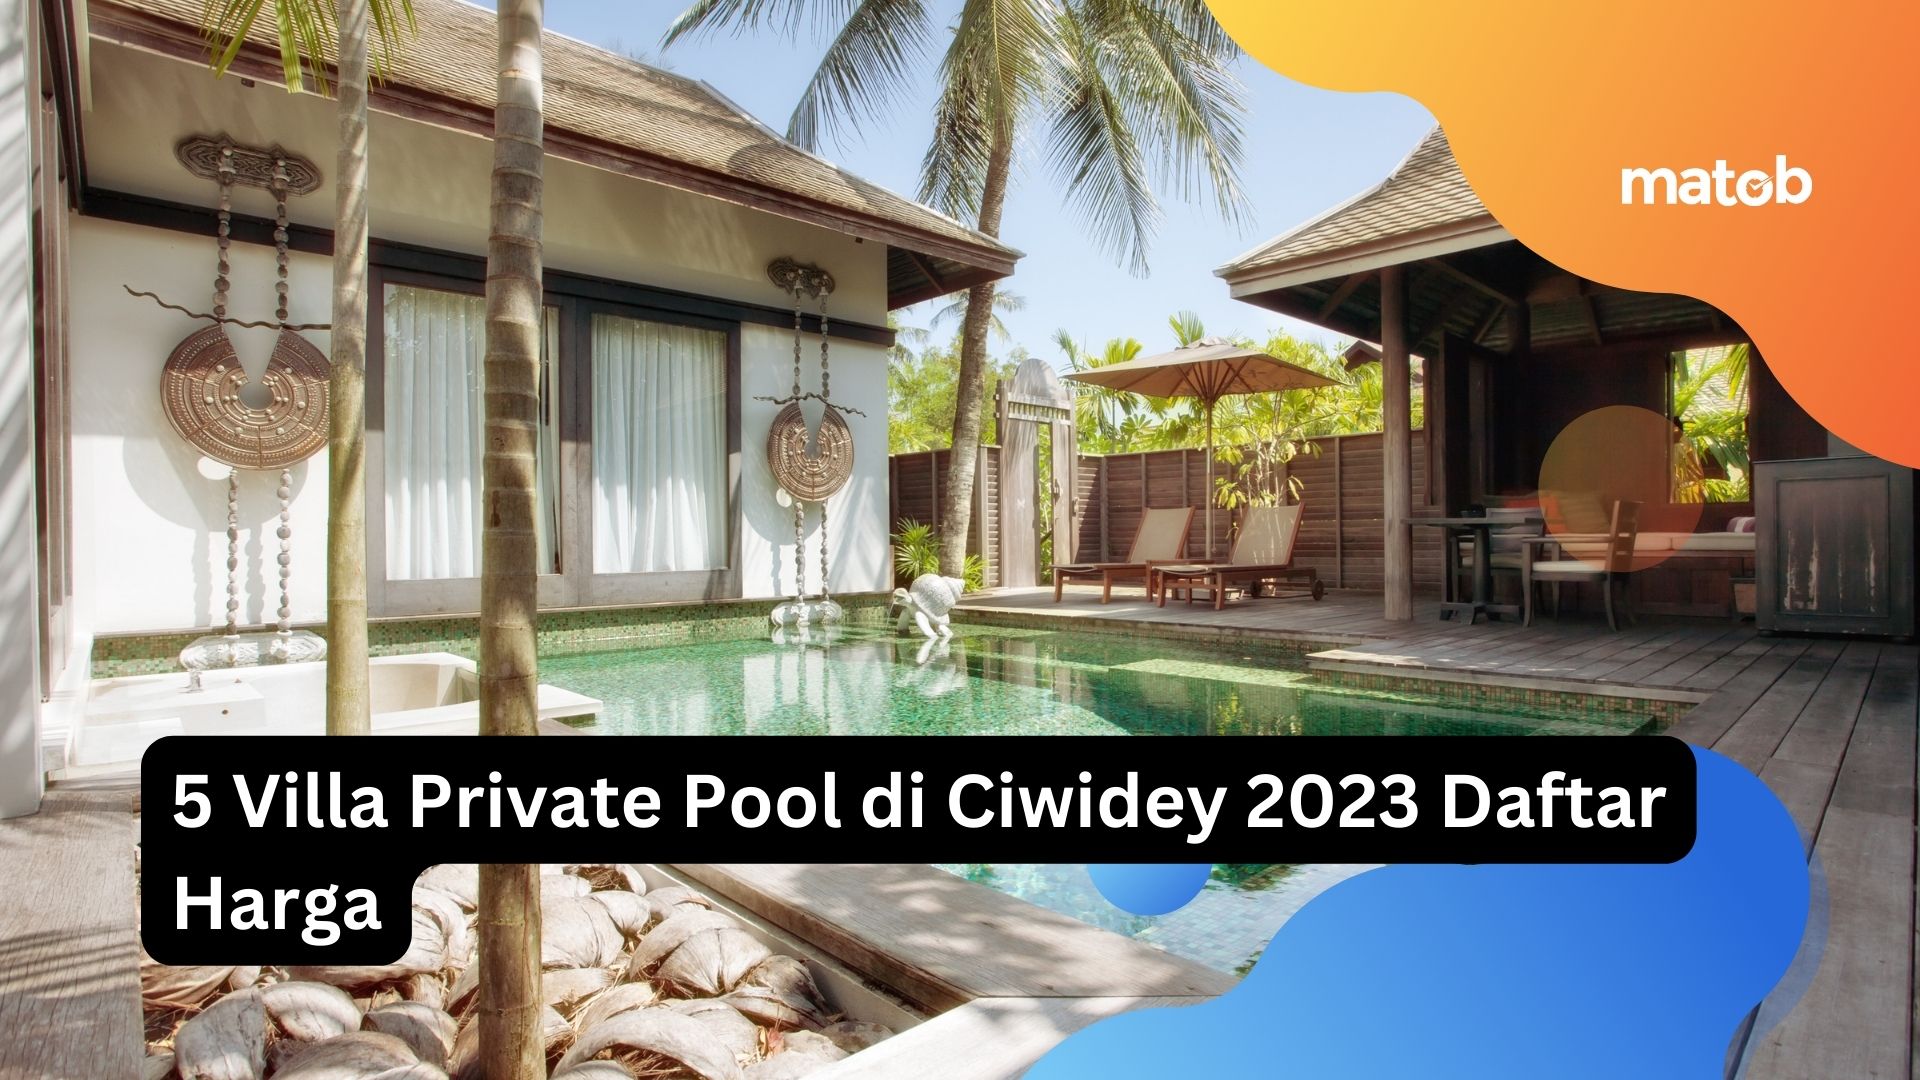 5 Villa Private Pool di Ciwidey 2023 Daftar Harga